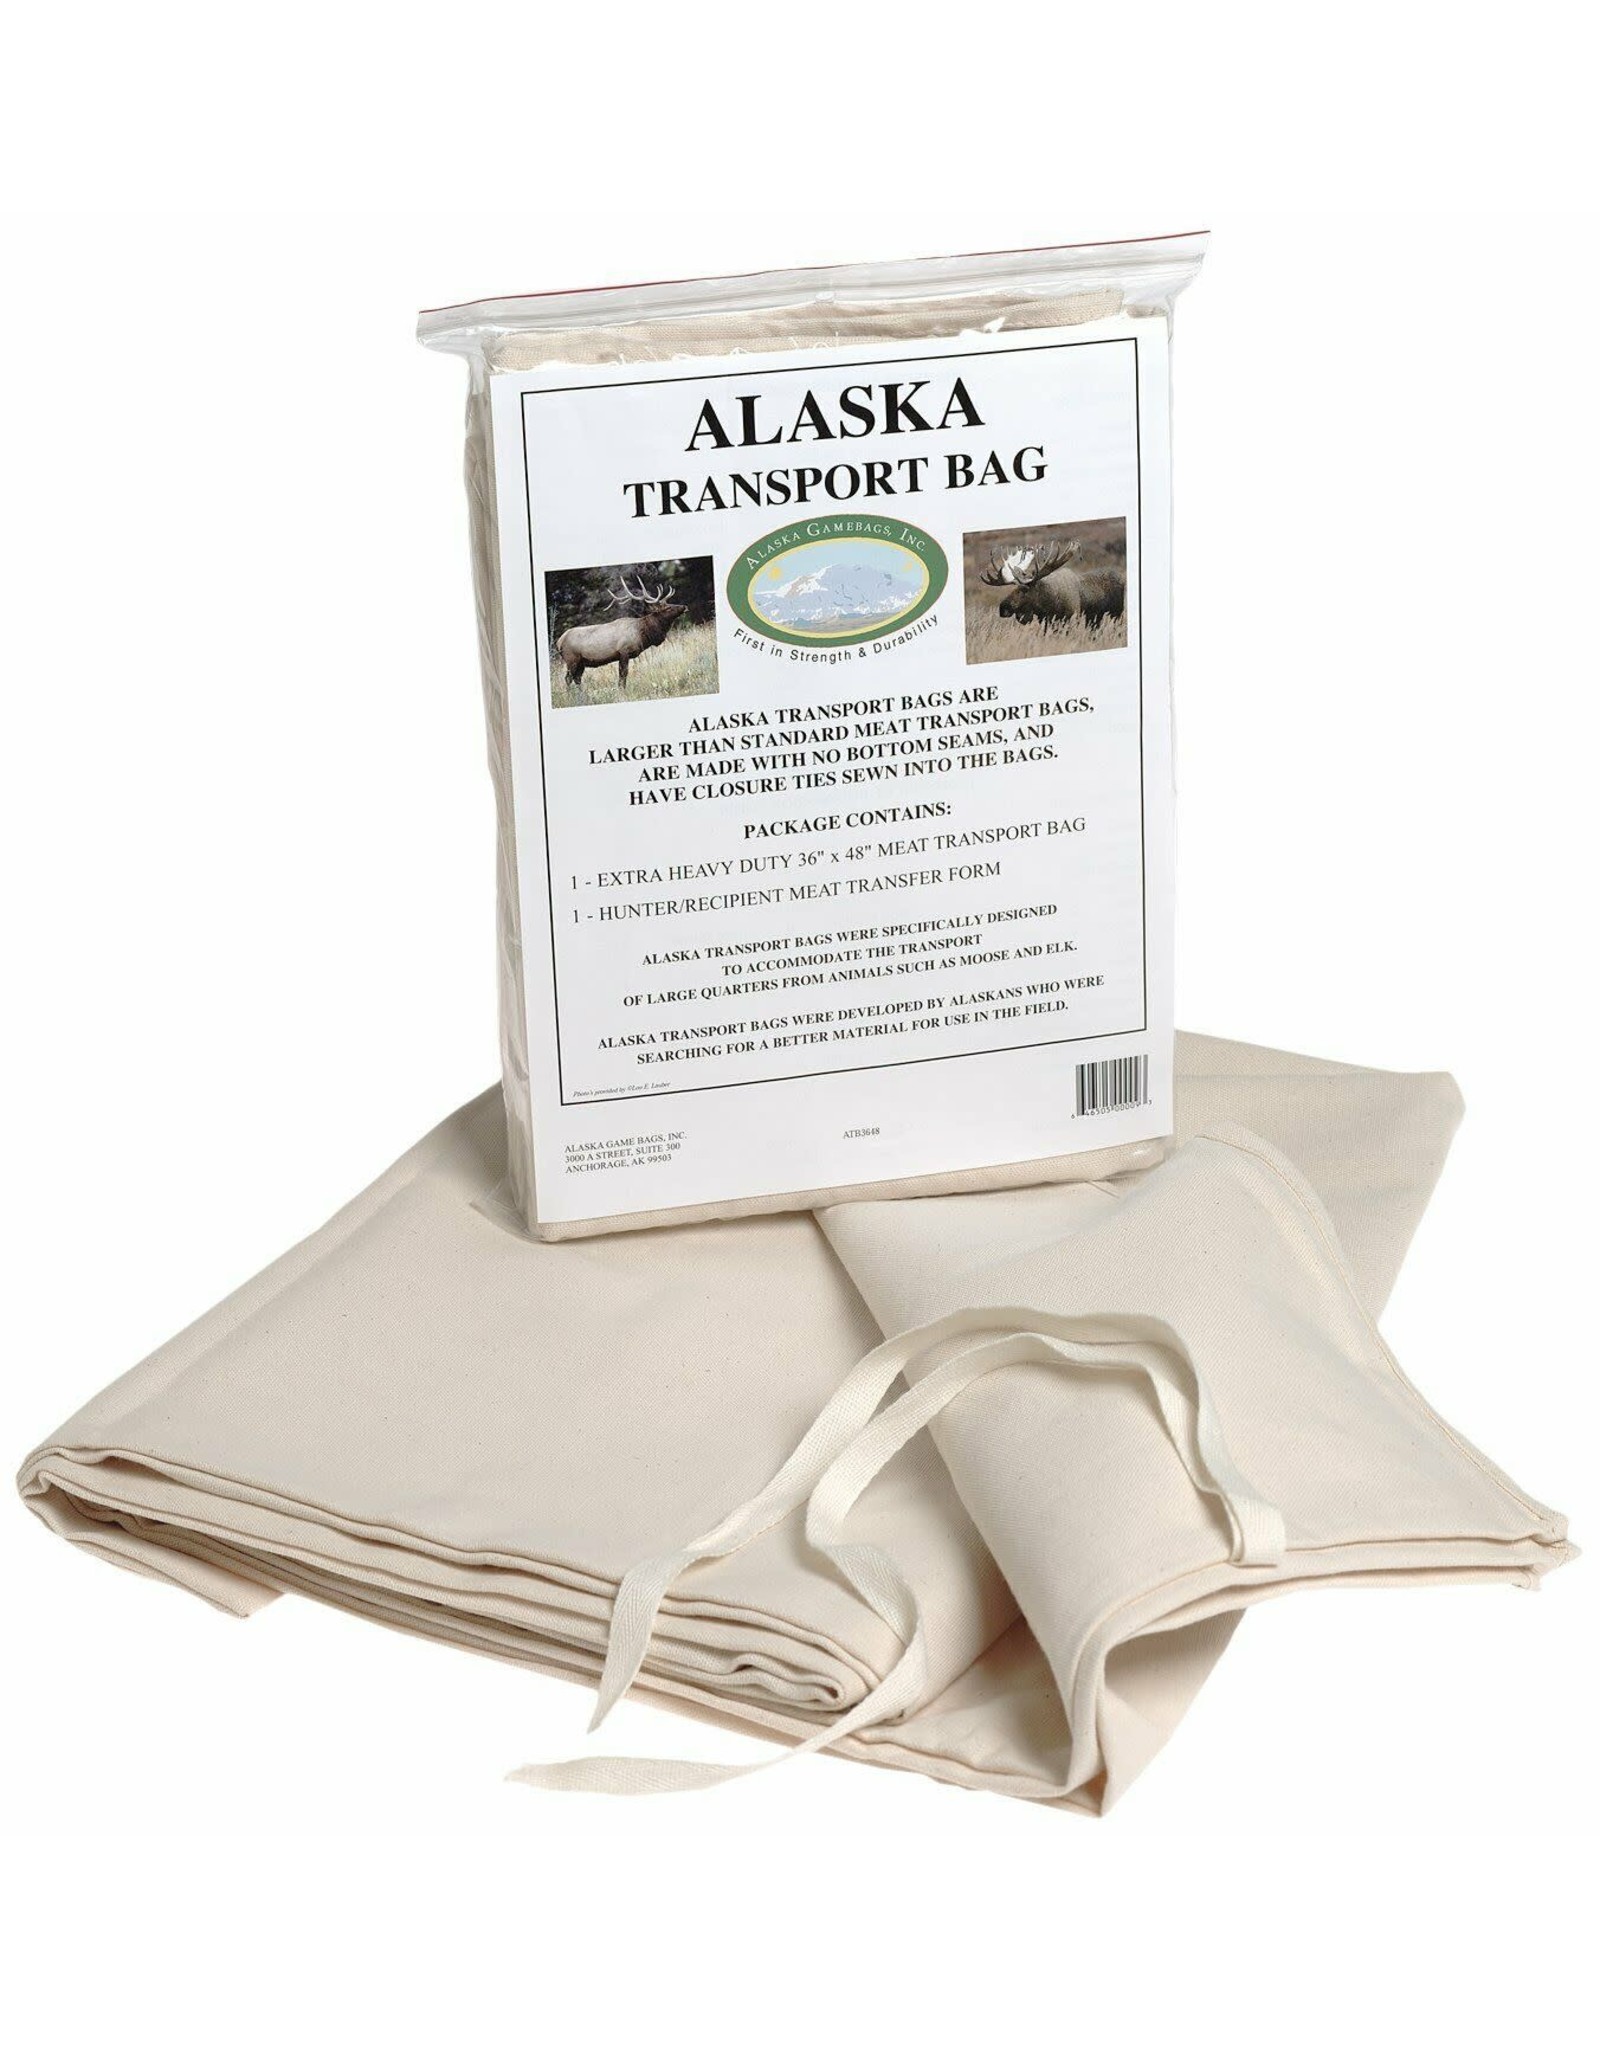 Alaska Alaska Game Bags - Alaska Transport Bag - 36"x48"